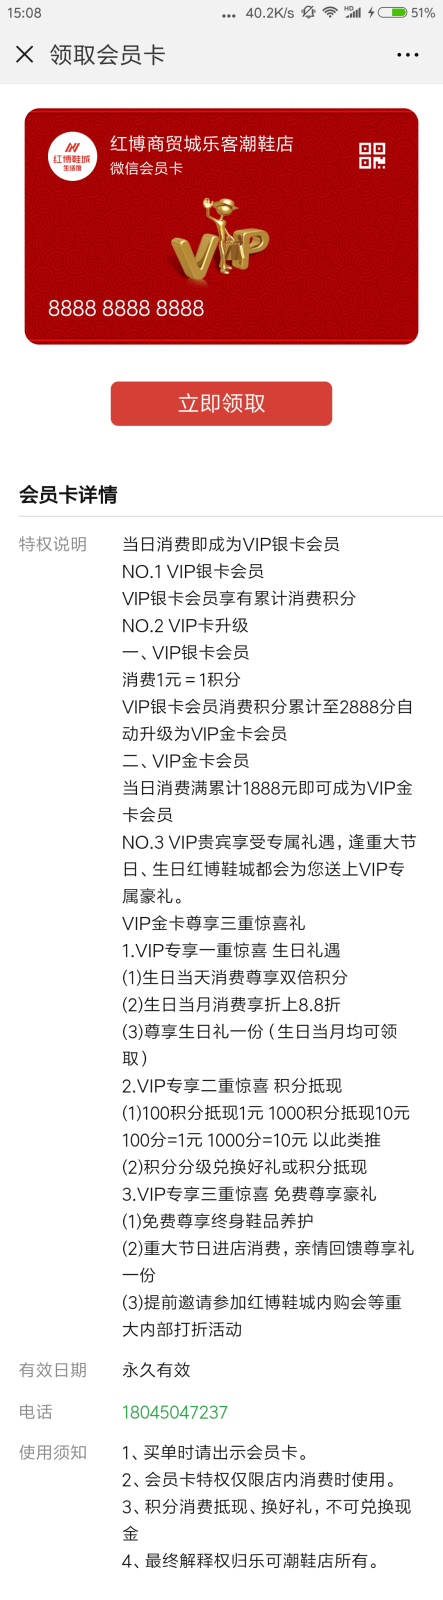 Screenshot_2018-08-23-15-07-59-955_com.tencent.mm.png